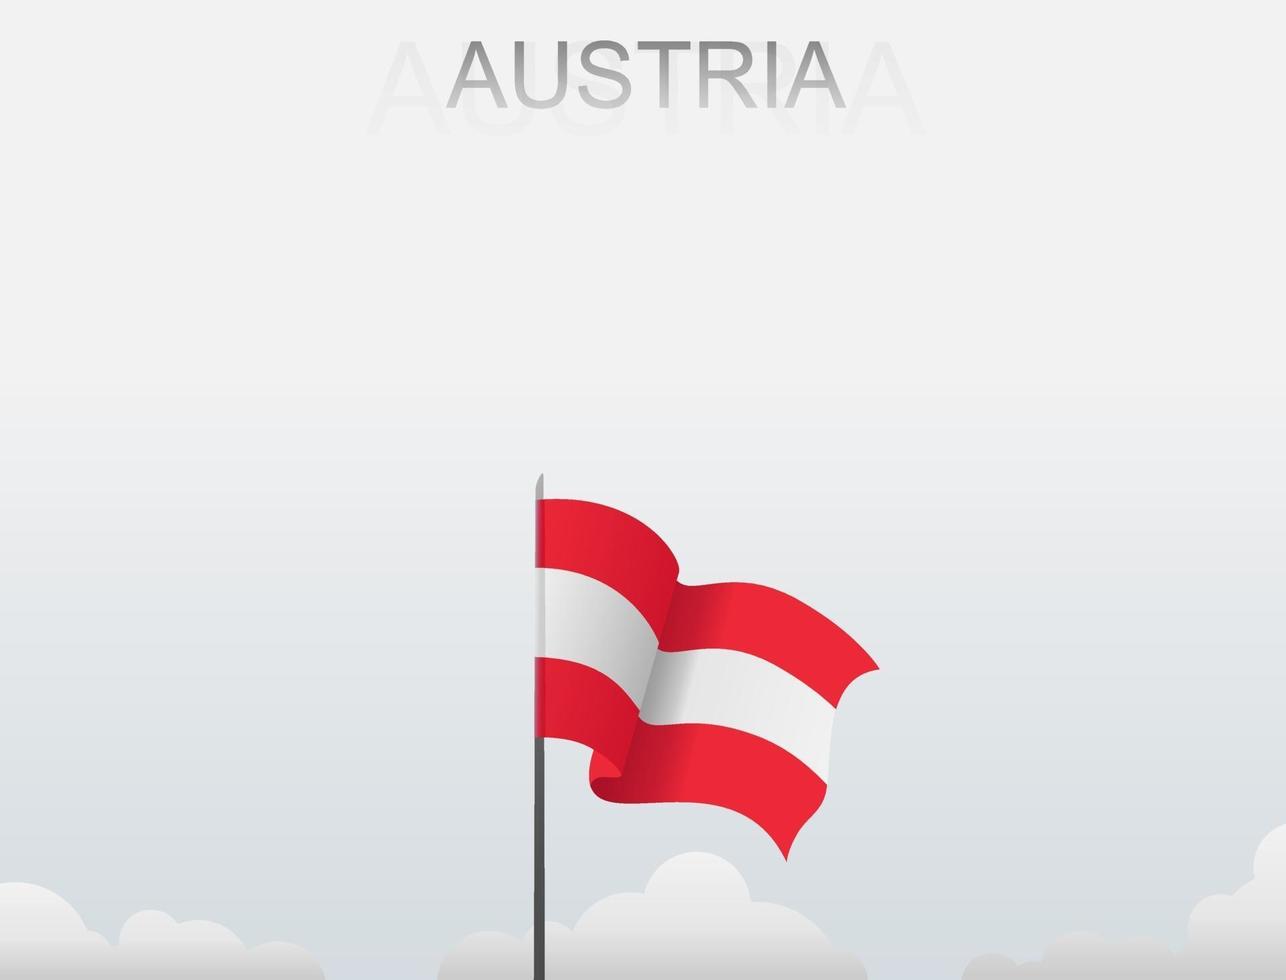 die österreichflagge weht an einem mast, der hoch unter dem weißen himmel steht vektor